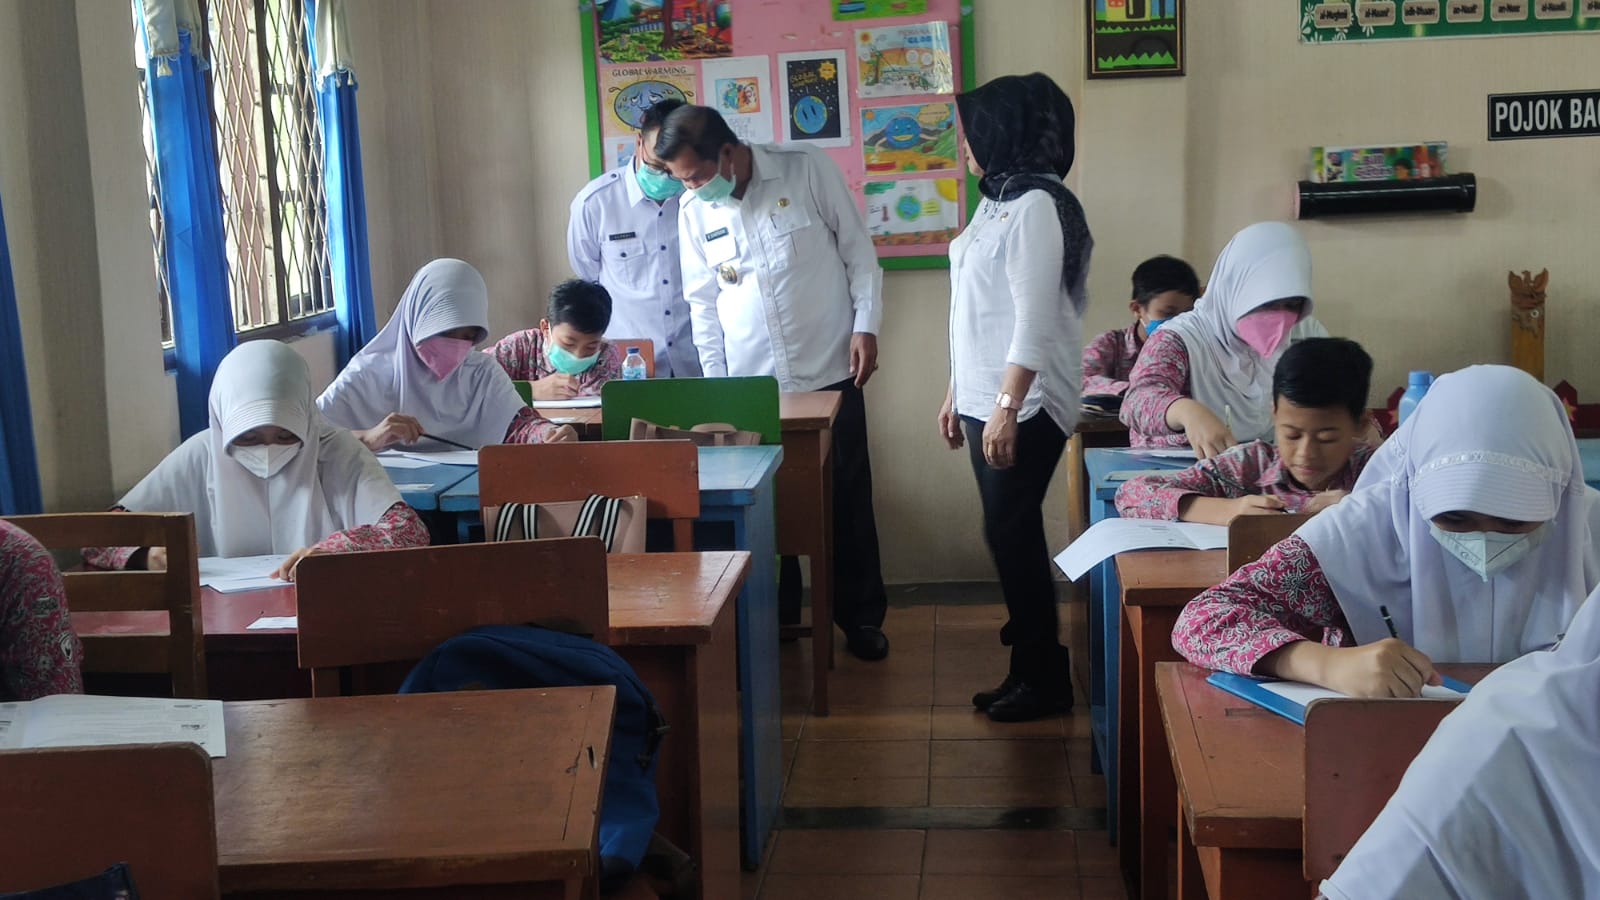 Wali Kota Serang Syafrudin meninjau langsung pelaksana Ujian Sekolah US di SDN 2 Kota Serang.